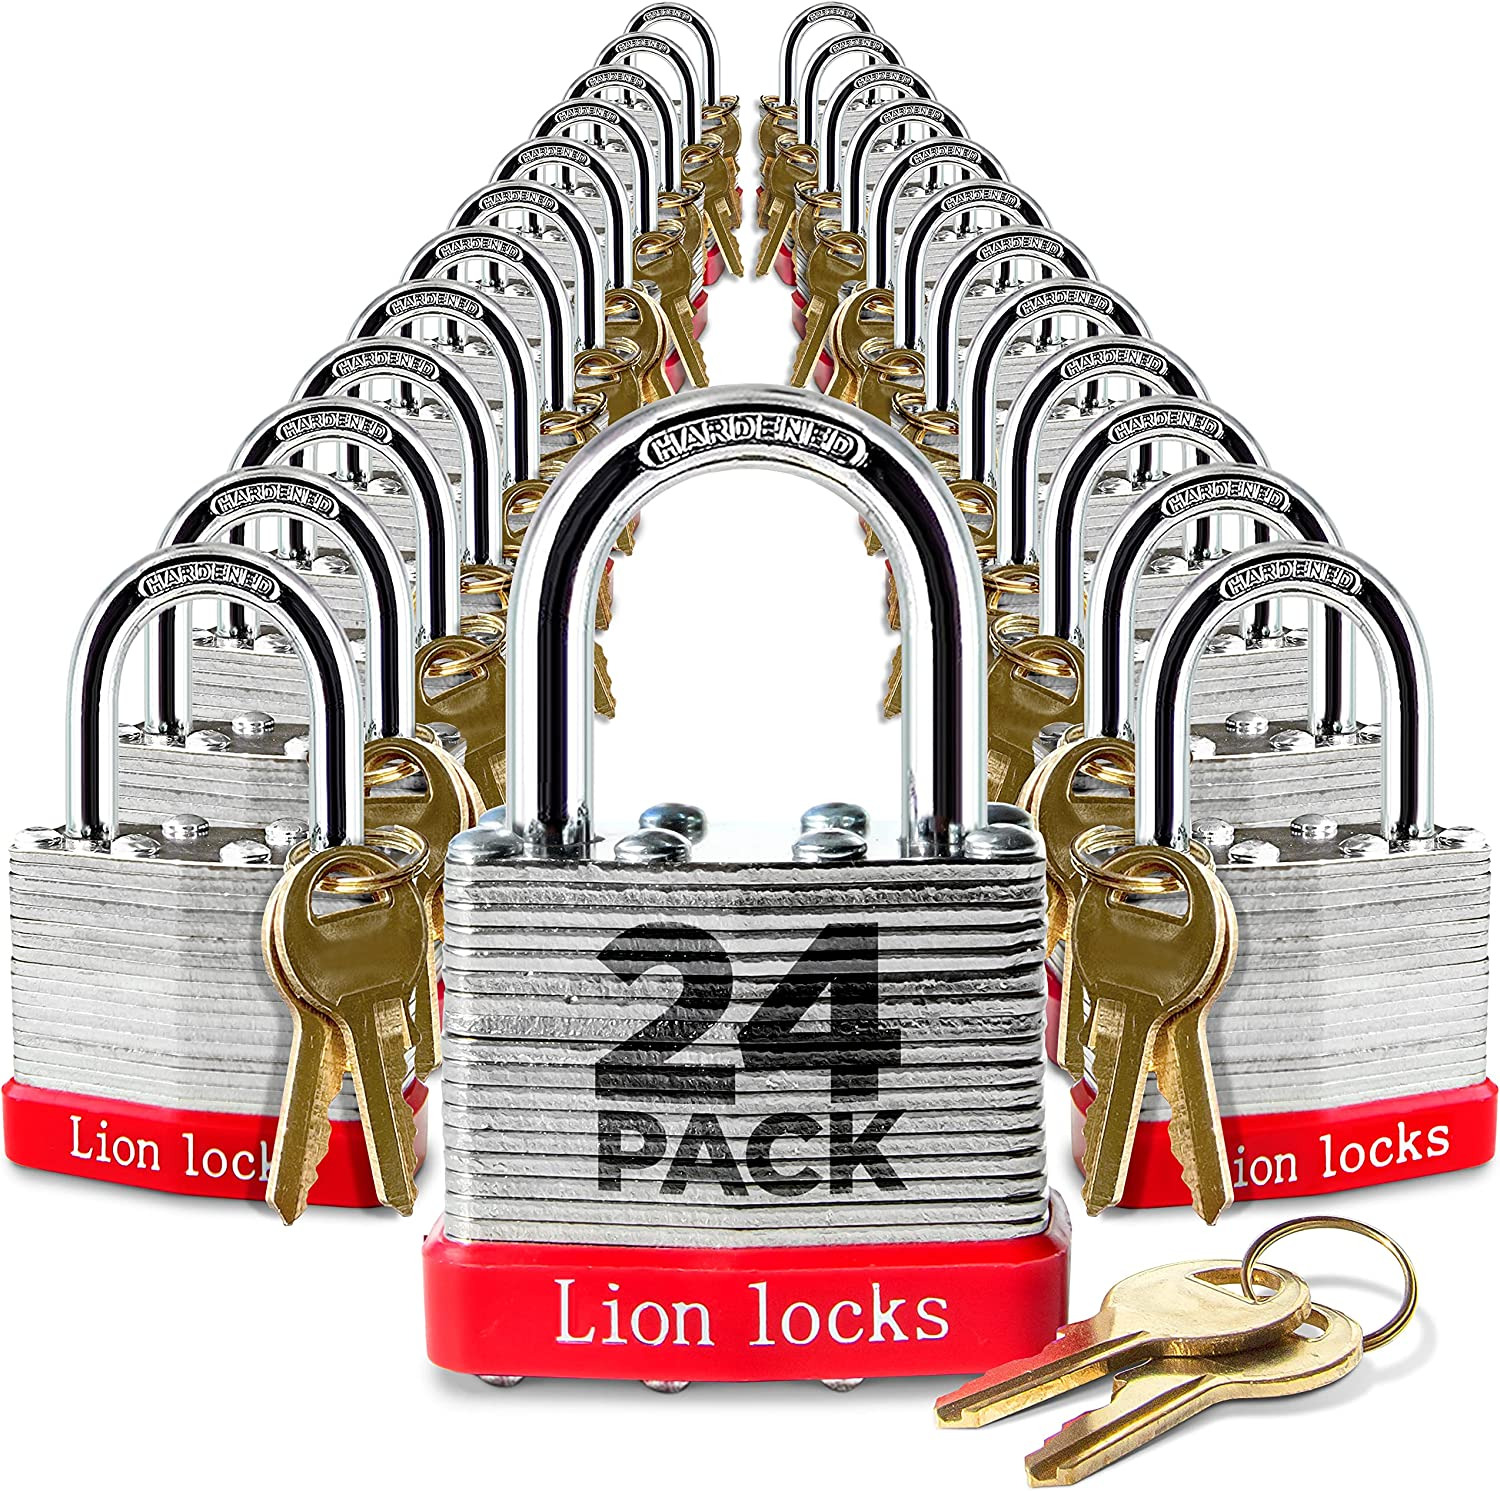 24 Keyed-Alike Padlocks W/ 1.25” Shackle, 48 Keys, Hardened Steel Case, Brass...